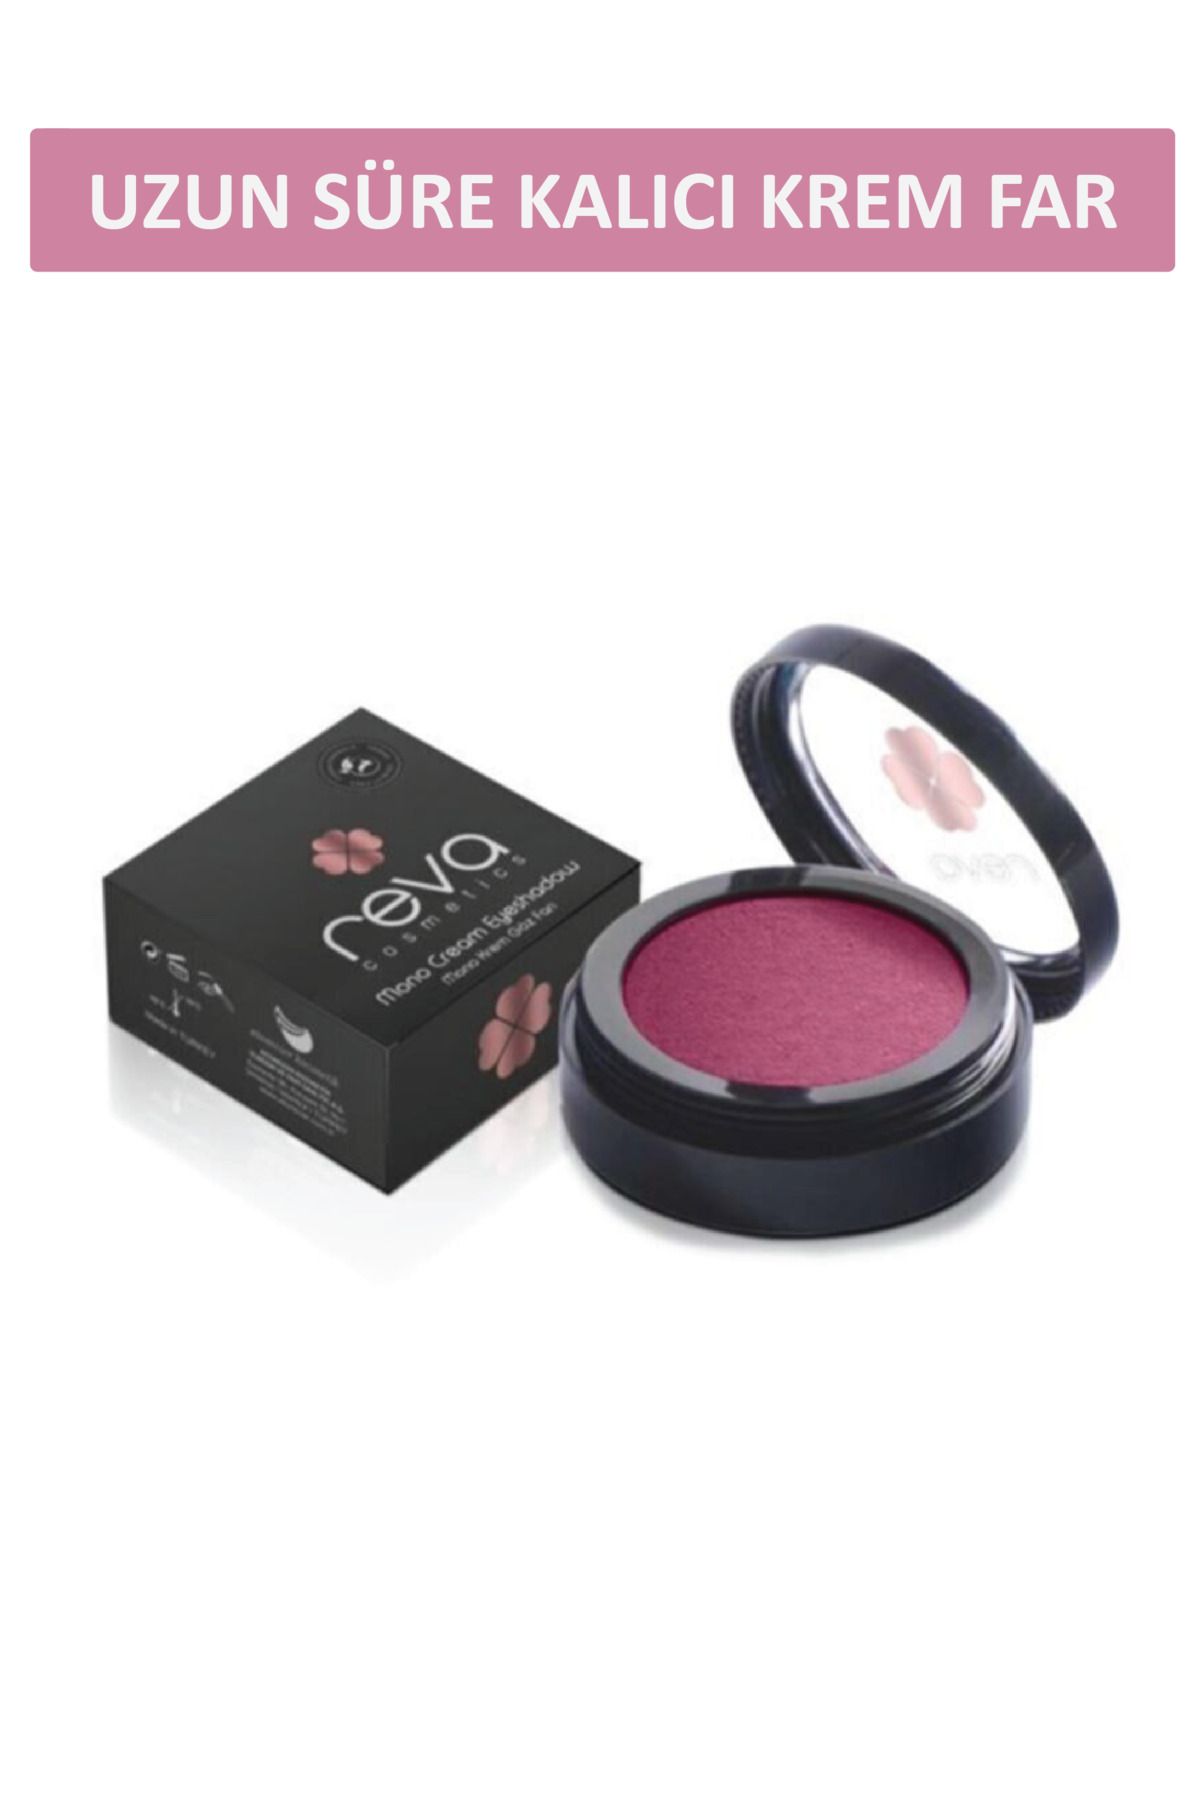 REVA Uzun Süre Kalıcı Krem Göz Farı - Mono Cream Eyeshadow Red Plum - No: 303 - Vegan & Temiz Içerik